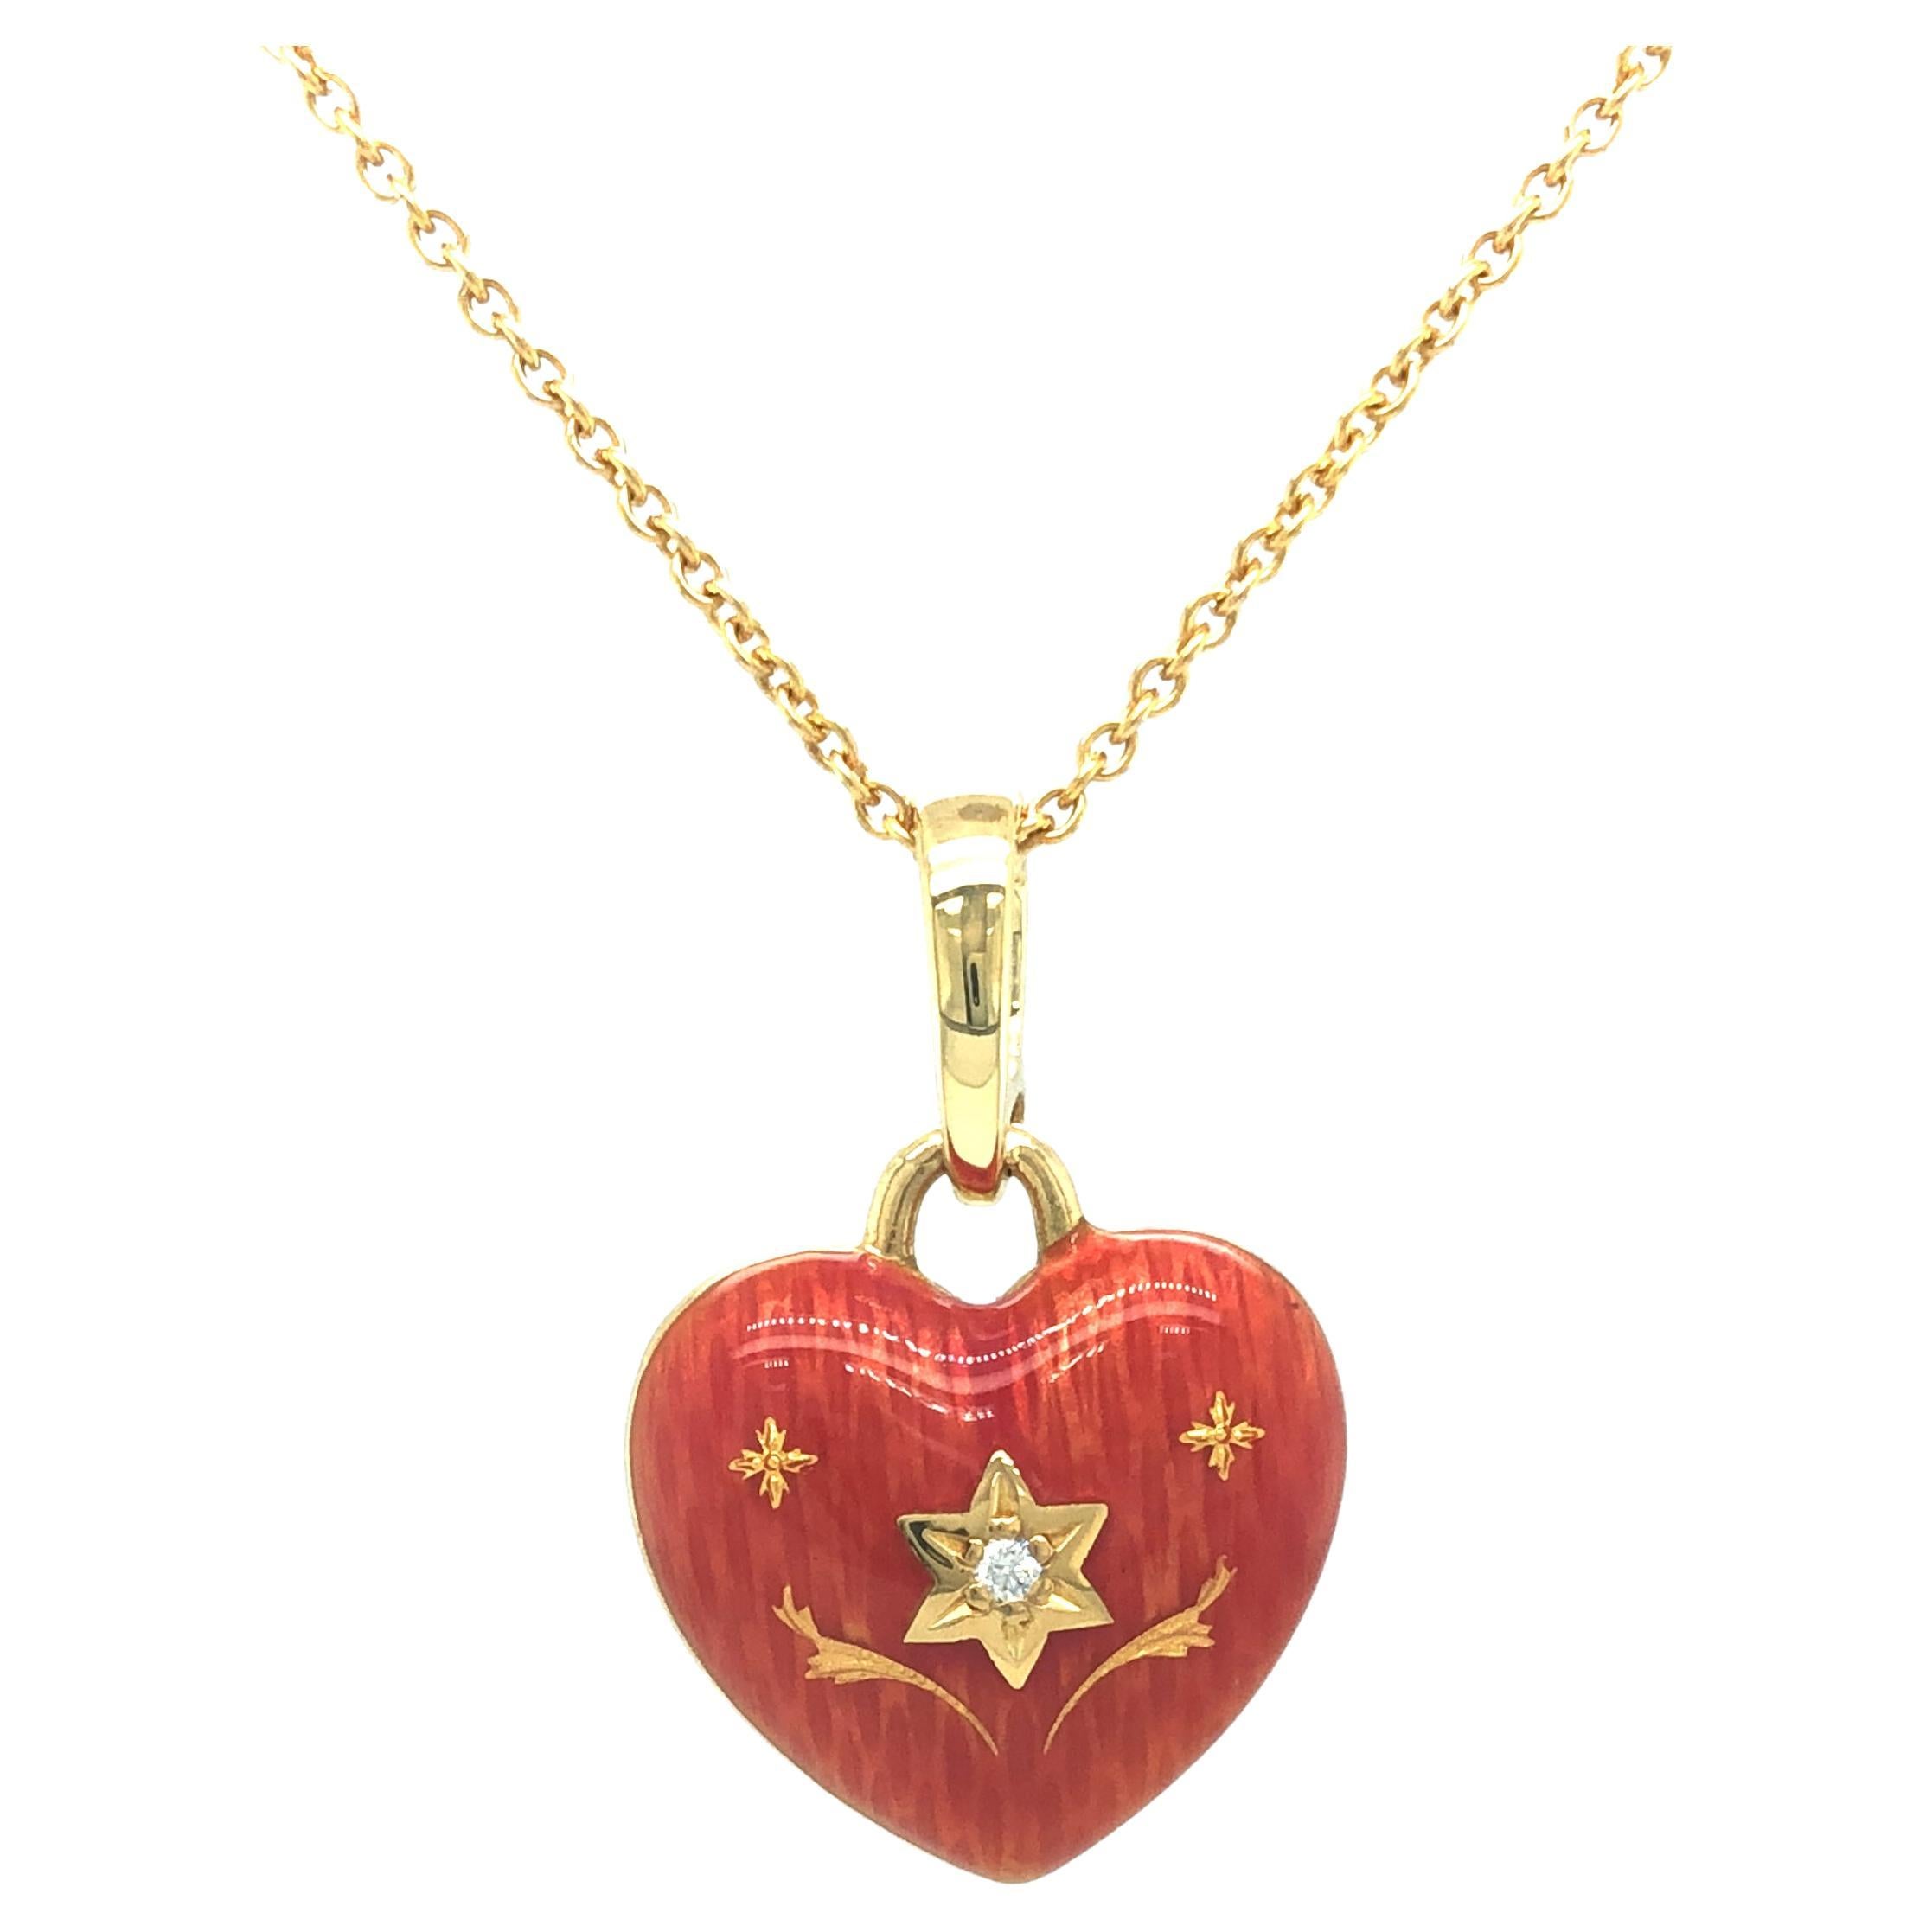 Fabergé Heart Pendant  Necklace Pink Enamel & Paillons 18k Yellow Gold 1 Diam.